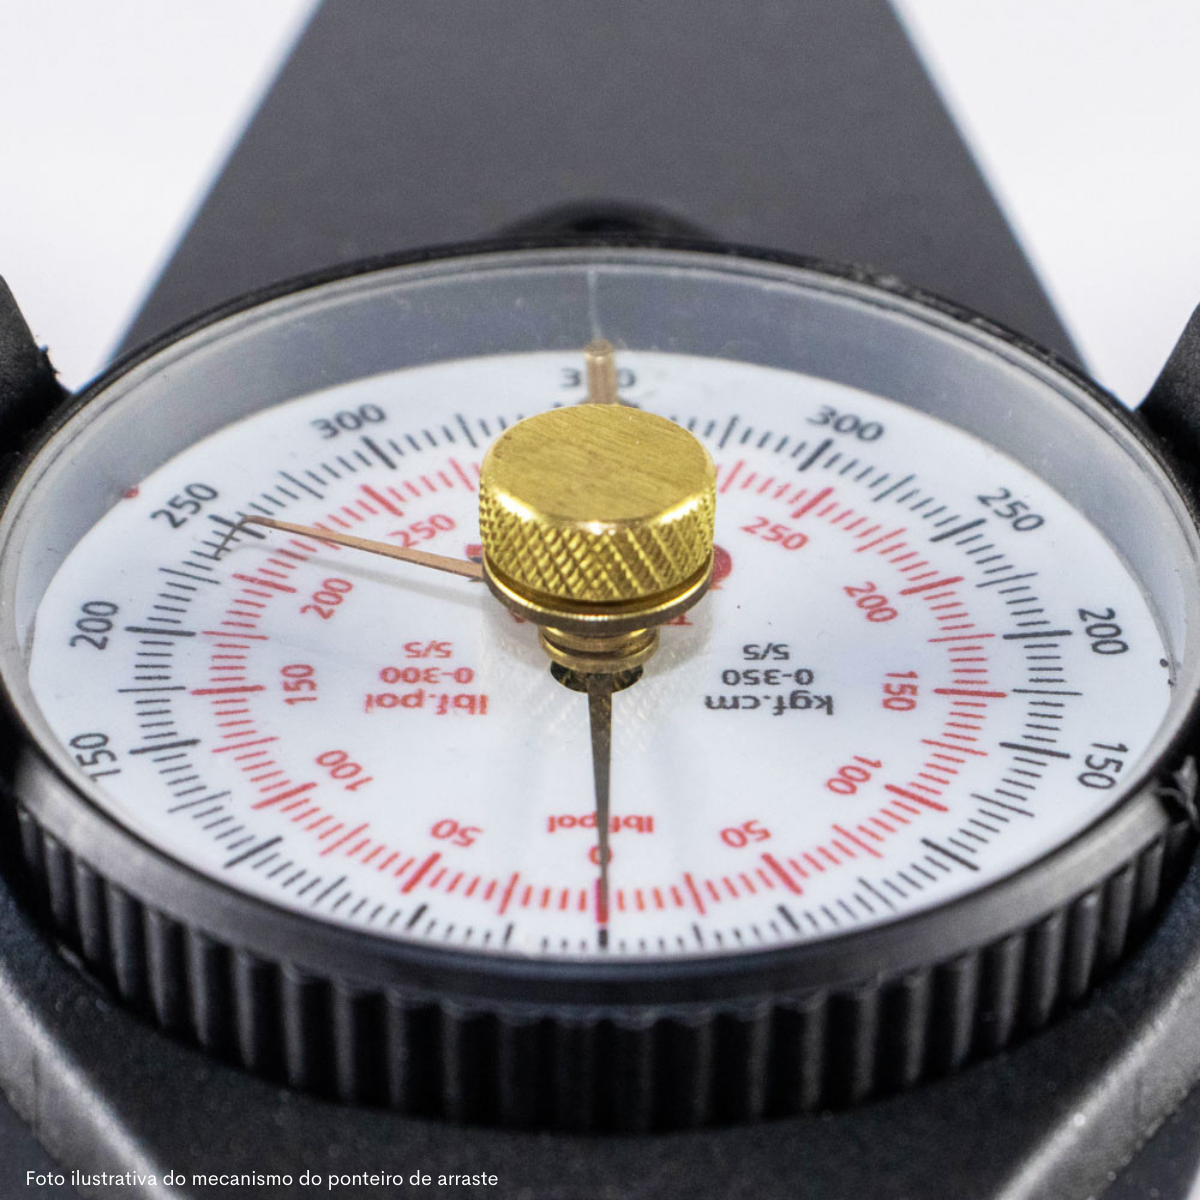 TRC20PA Torquímetro Relógio 0 a 20 kgf.m encaixe  1/2"com Laudo RBC